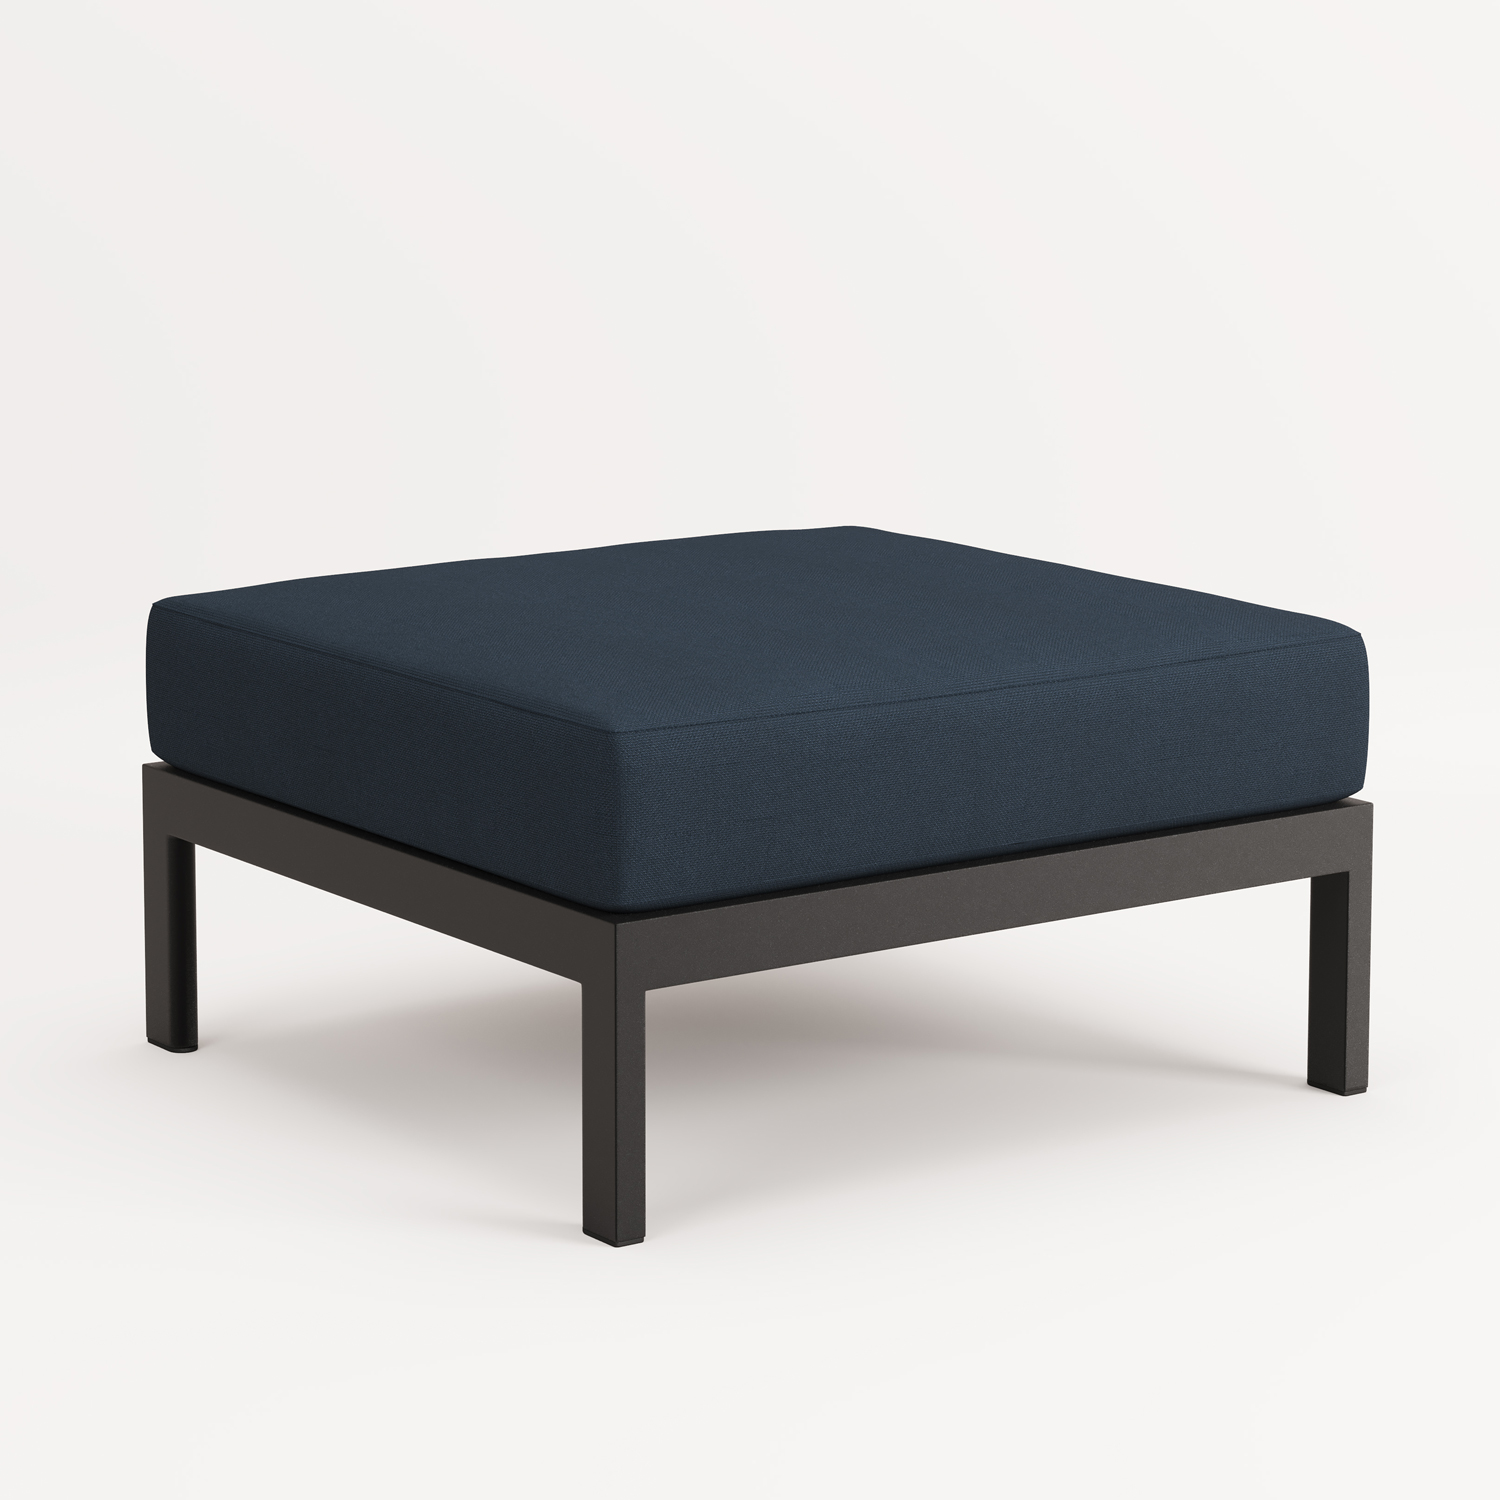 EASY corner sofa – 3 to 4 seats